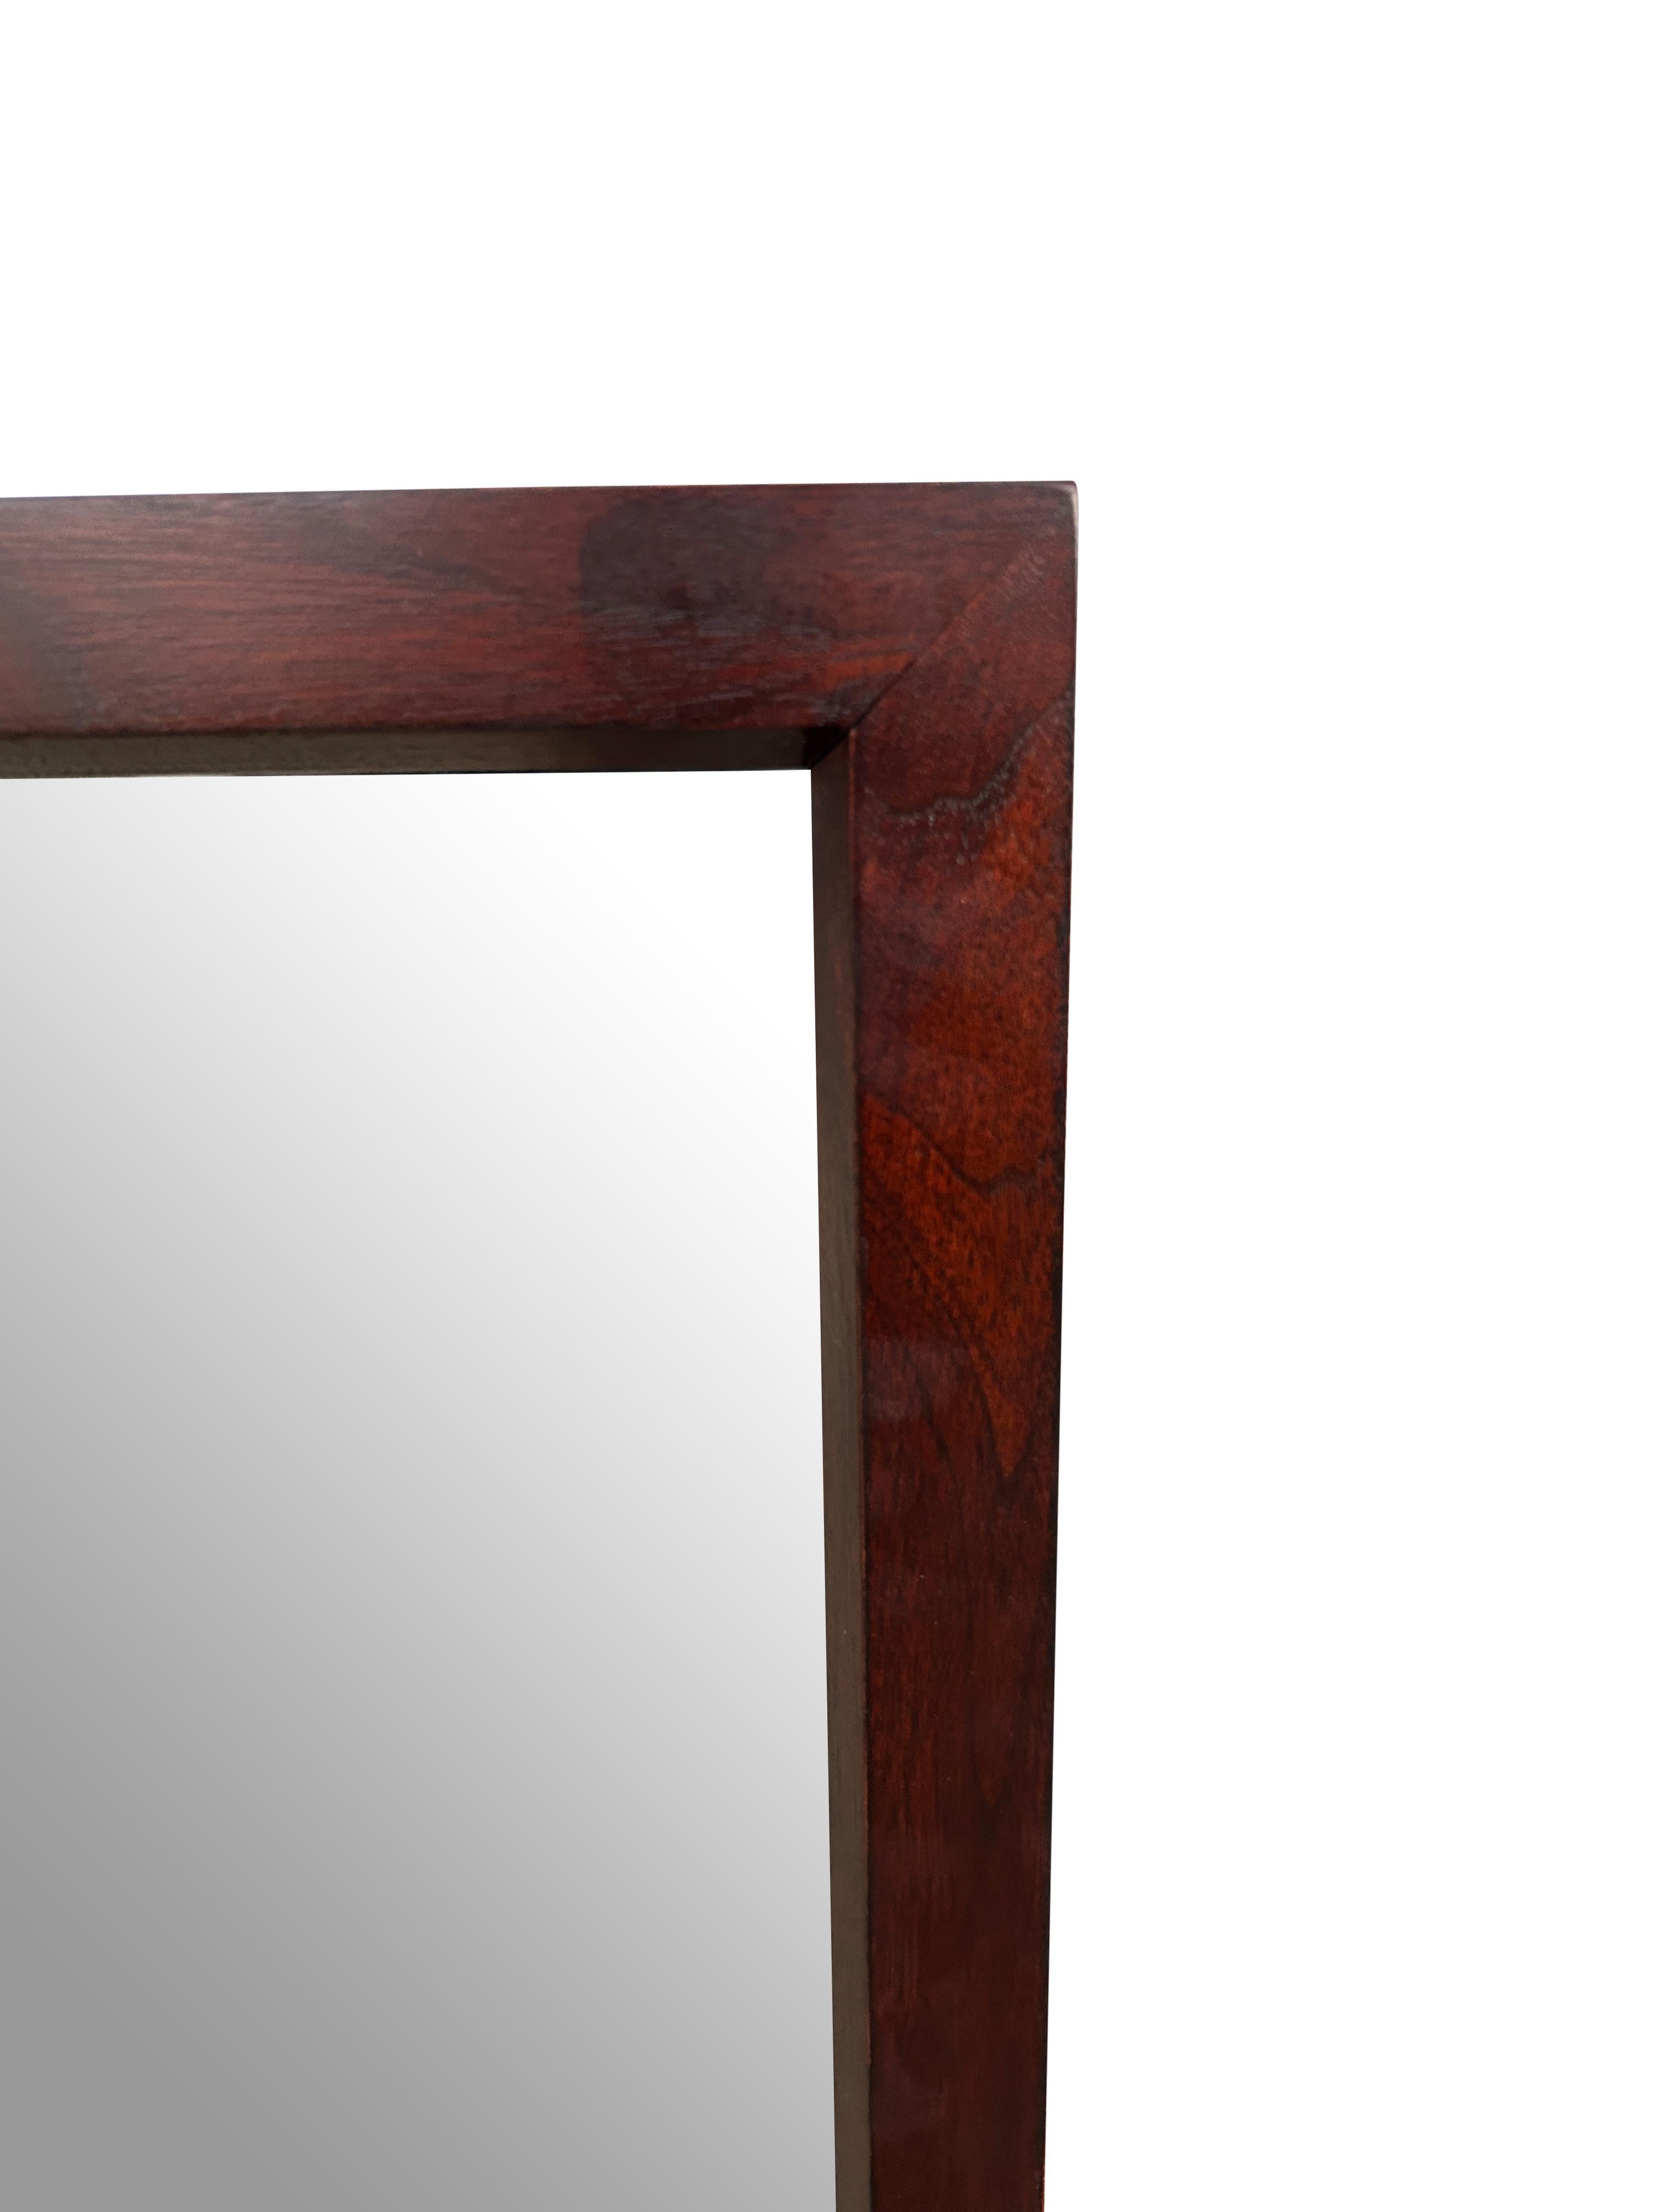 American Mid-Century Modern Solid Walnut Framed Wall Mirror John Stuart